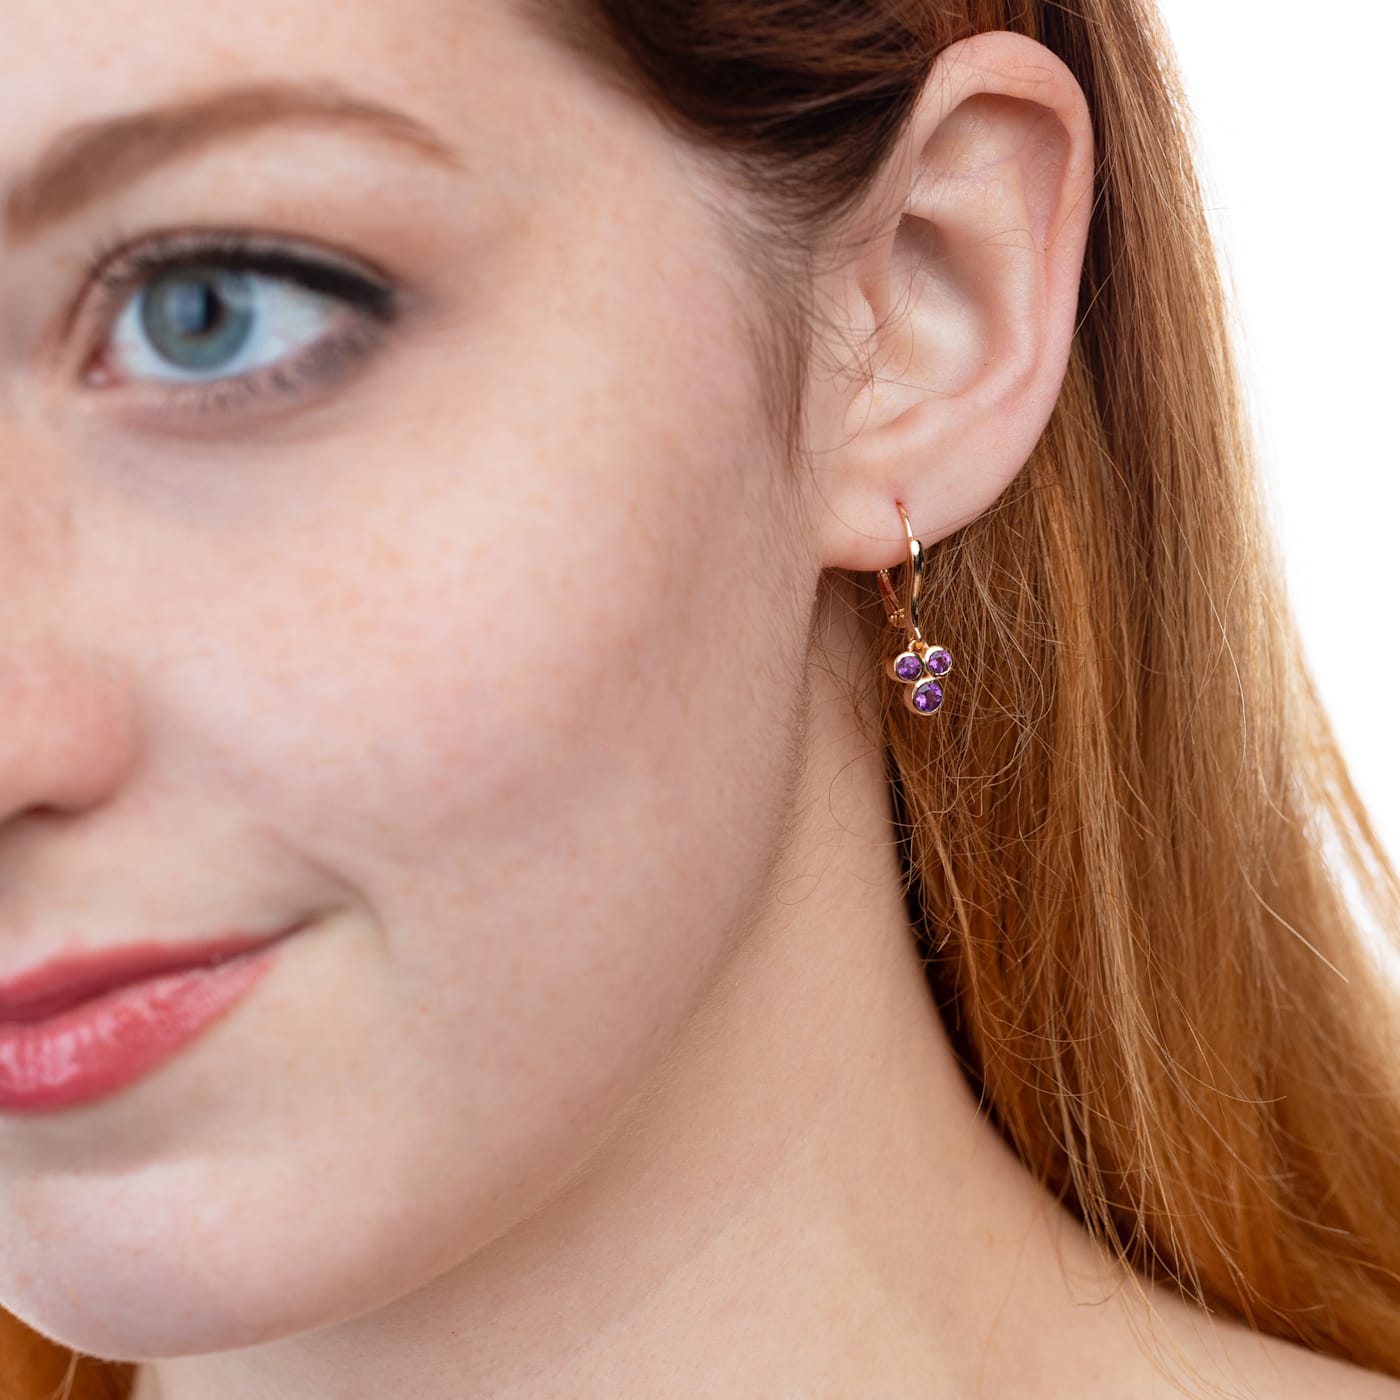 Ladies Diamond Star Stud Earrings 0.34ctw